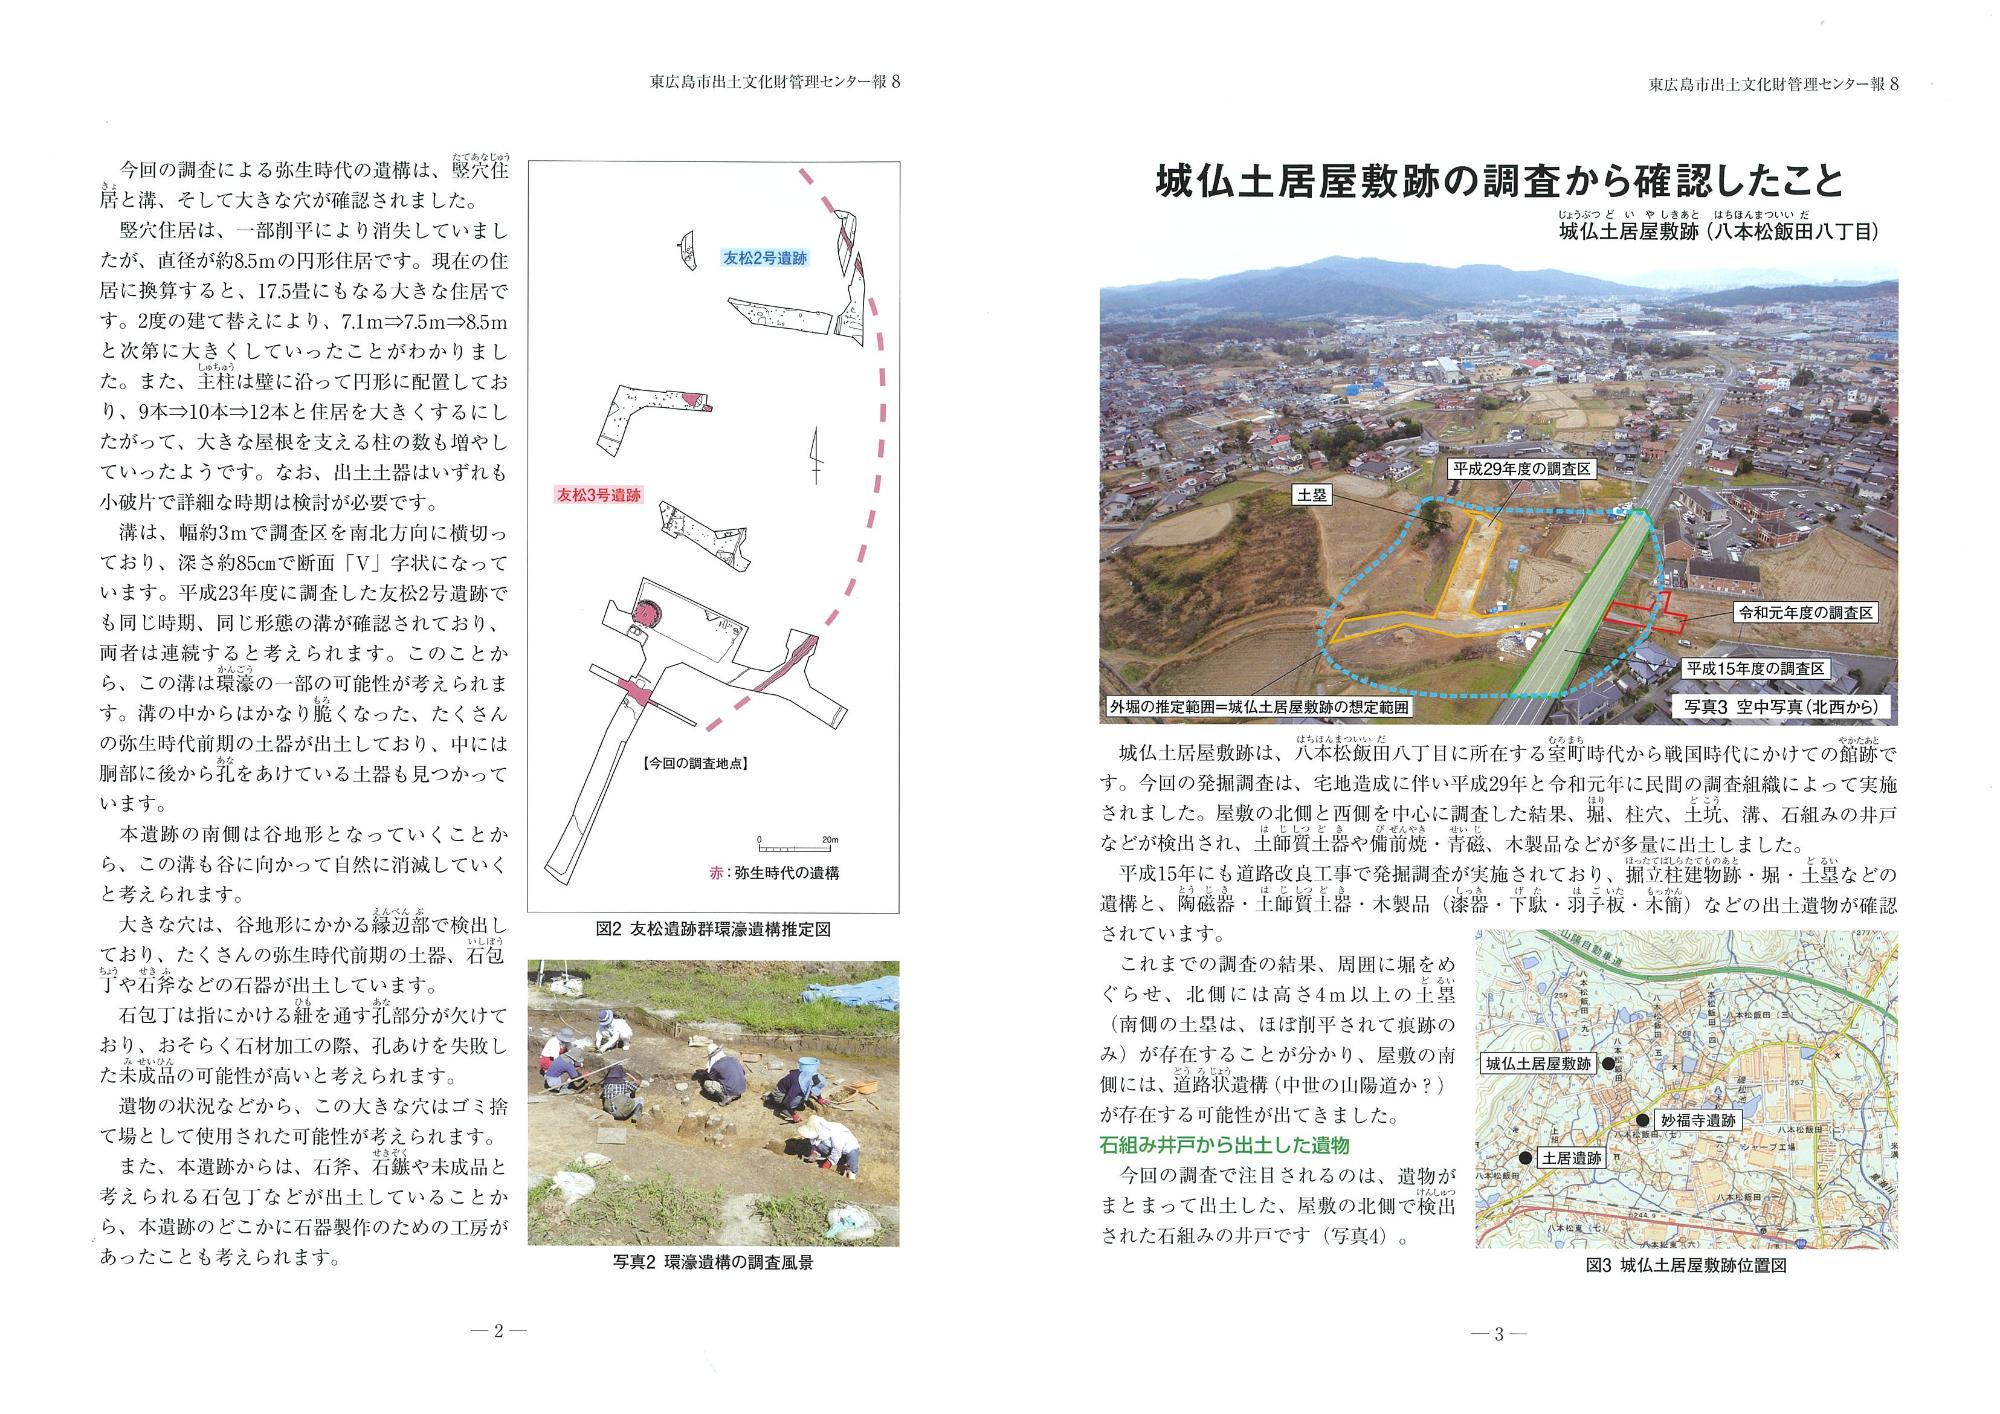 東広島市出土文化財管理センター報『東ひろしまの遺跡』8の写真2